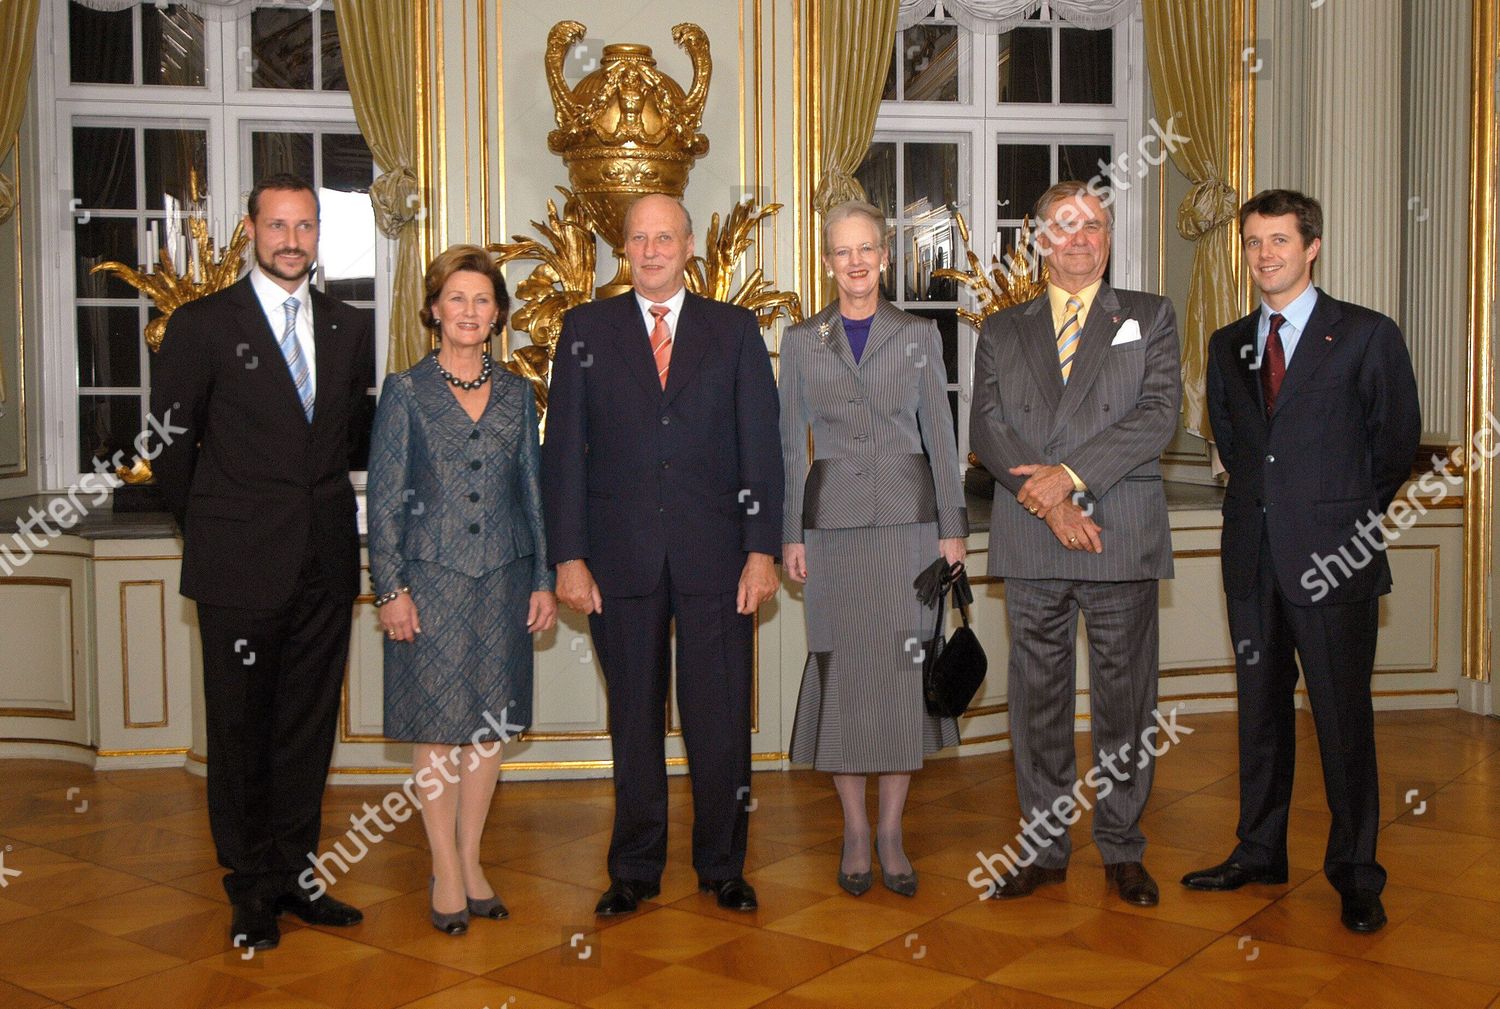 norwegian-royal-family-visit-to-copenhagen-denmark-shutterstock-editorial-559508a.jpg